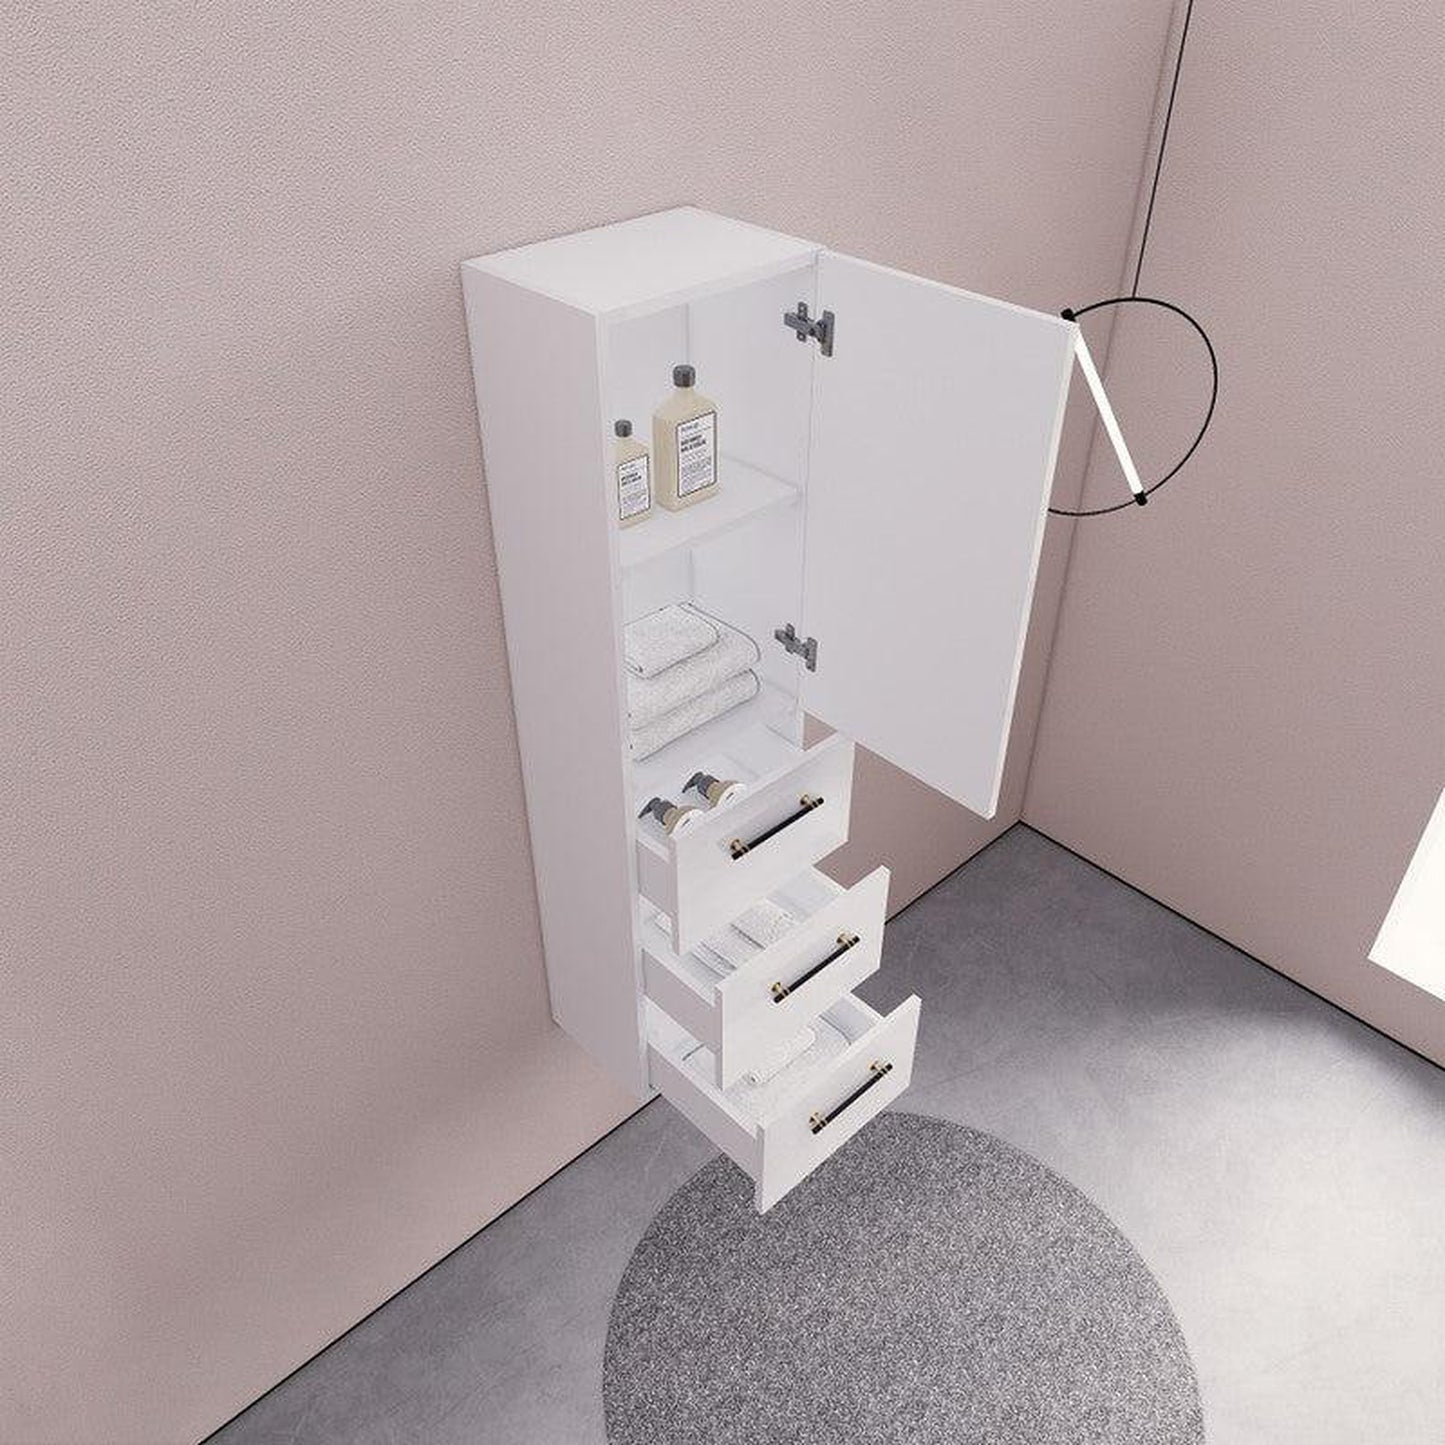 Moreno Bath ELSA 16" High Gloss White Wall-Mounted Bathroom Linen Side Cabinet